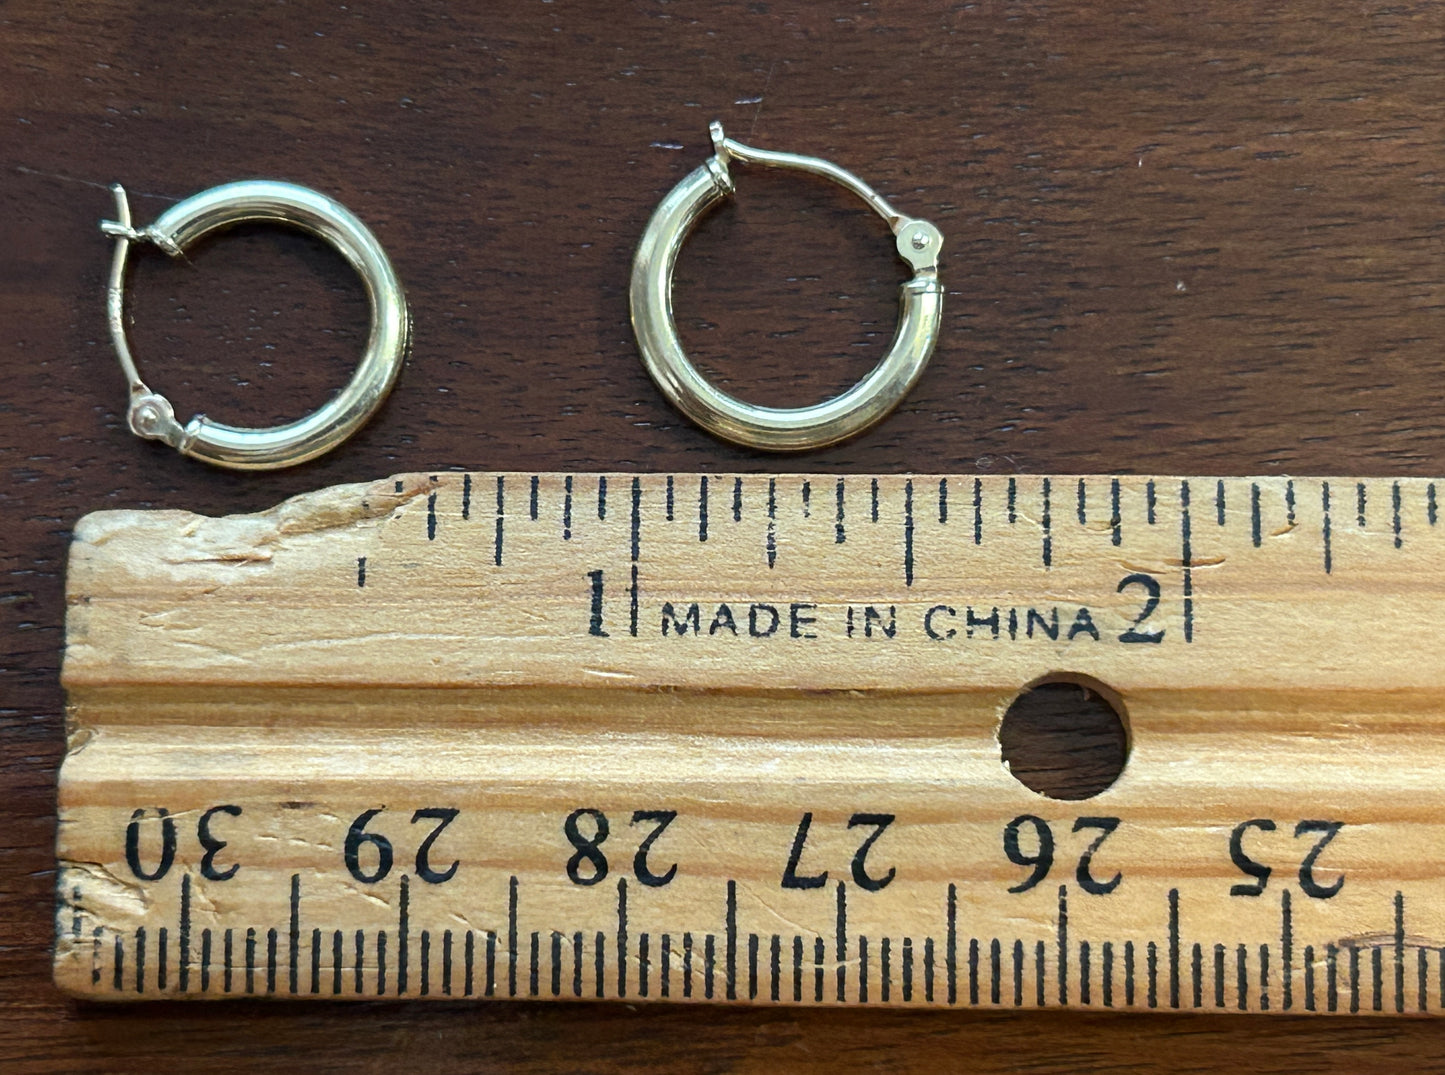 14k Yellow Gold JCM Small Hoop Pierced Earrings